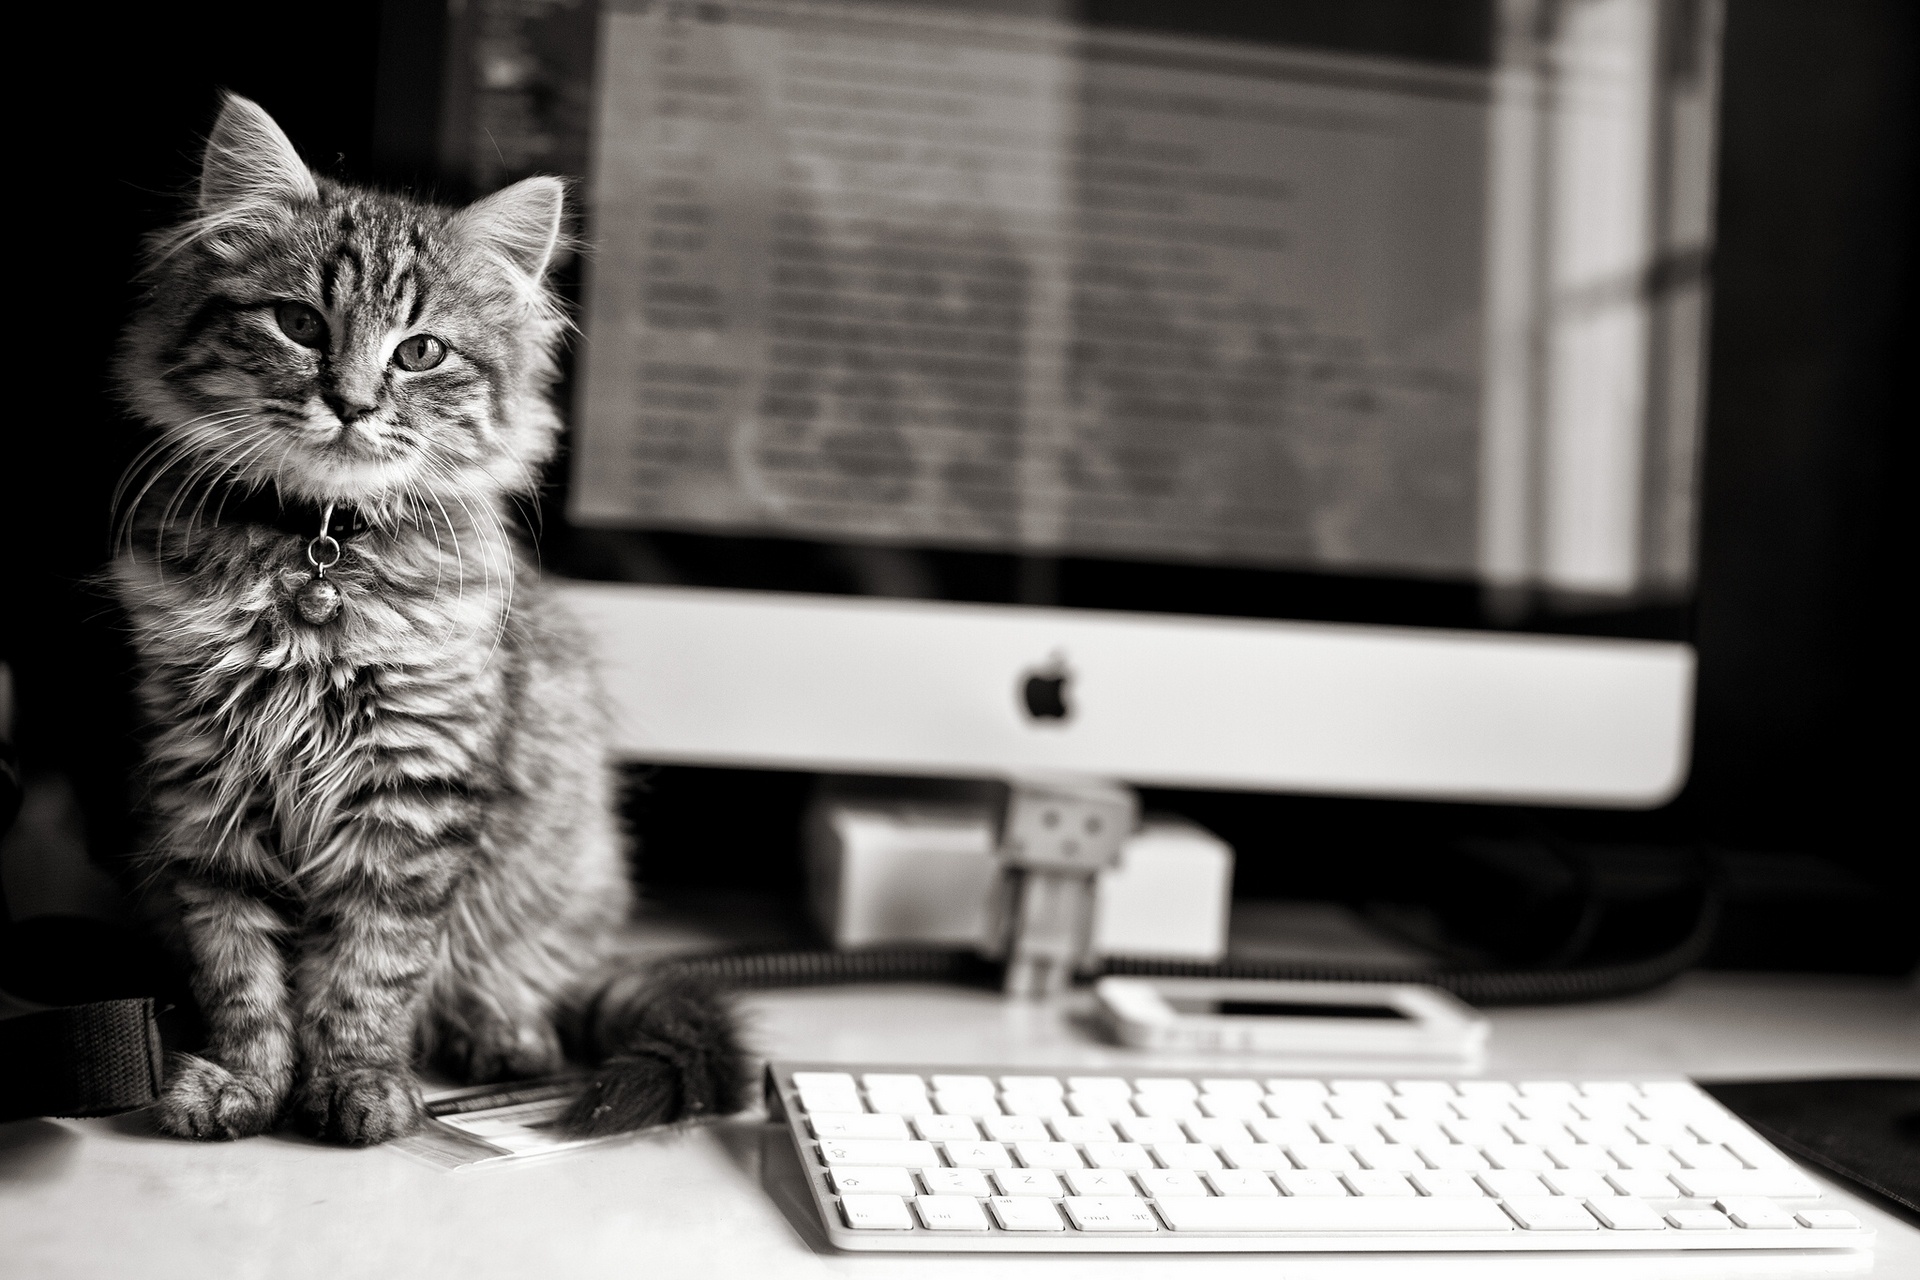 Популярные заставки и фоны Котёнок на компьютер